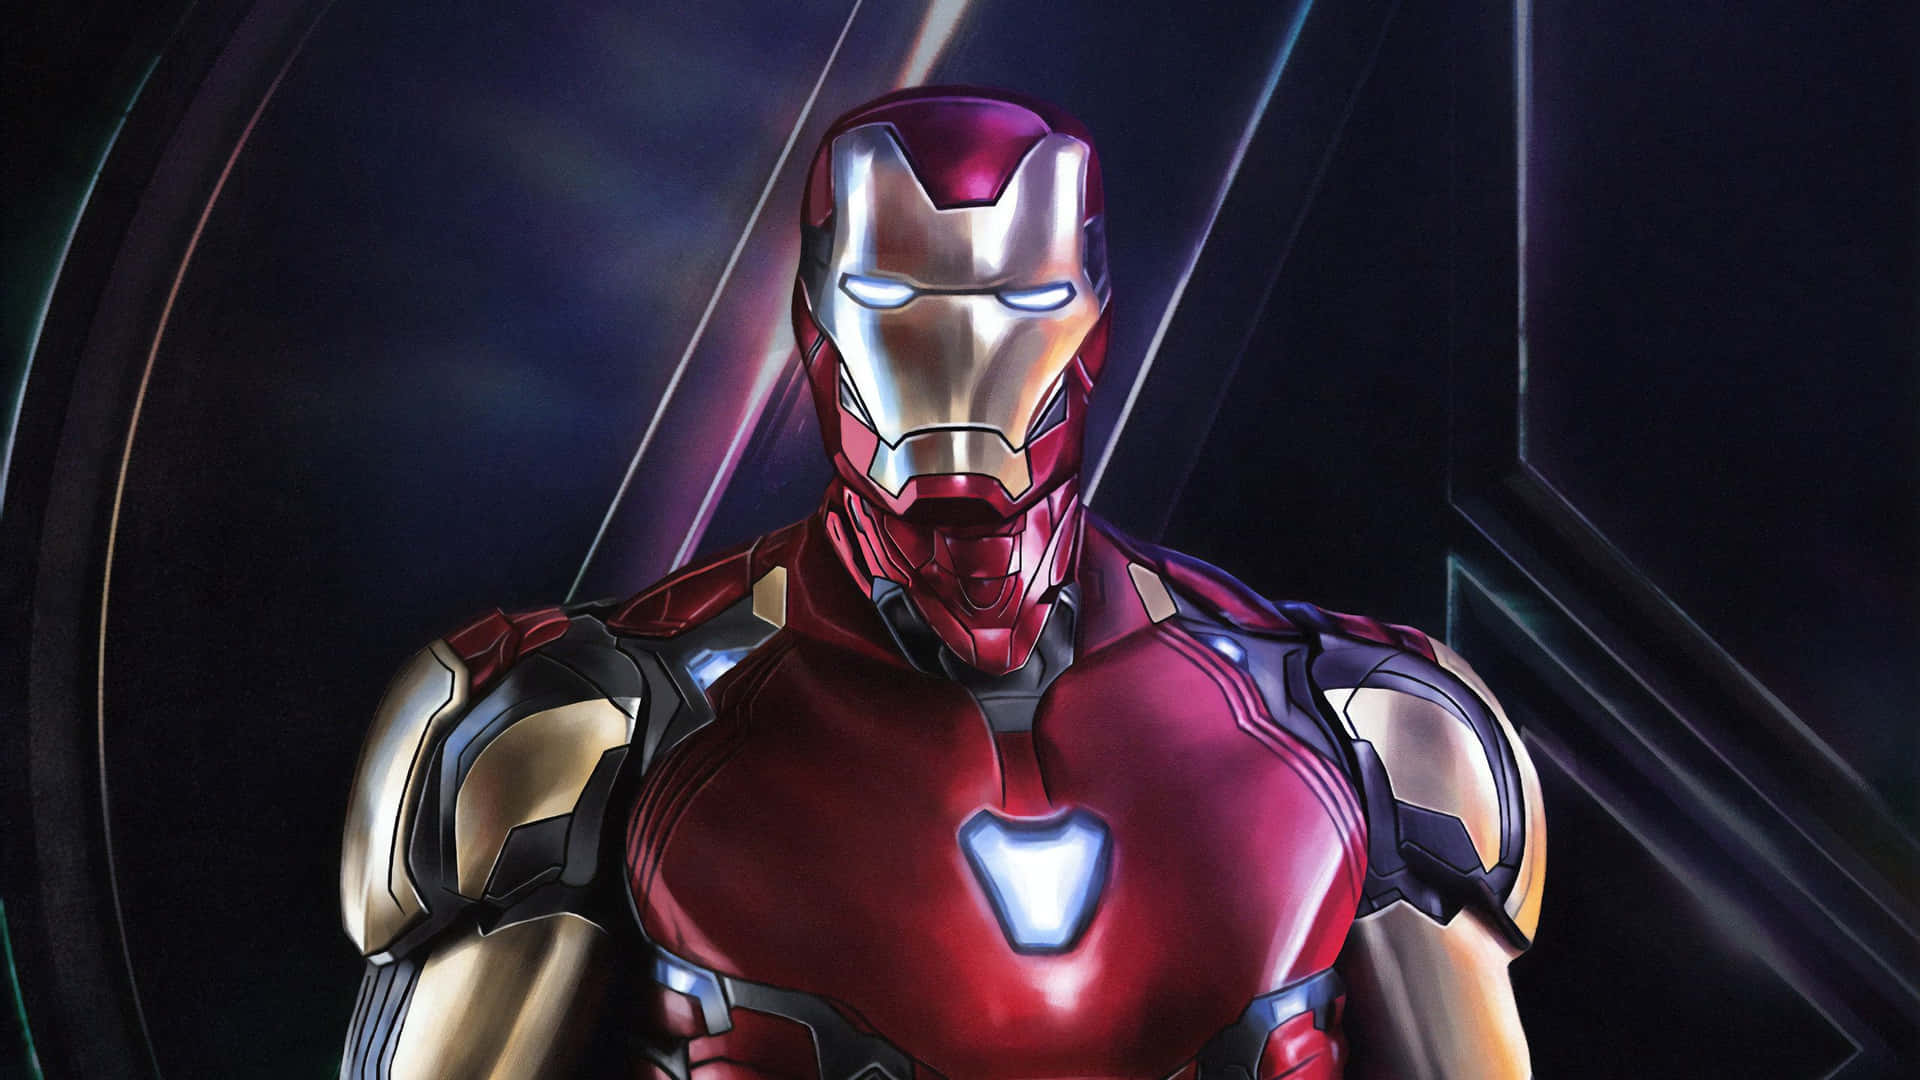 Avengers Iron Man Endgame Film Poster Wallpaper